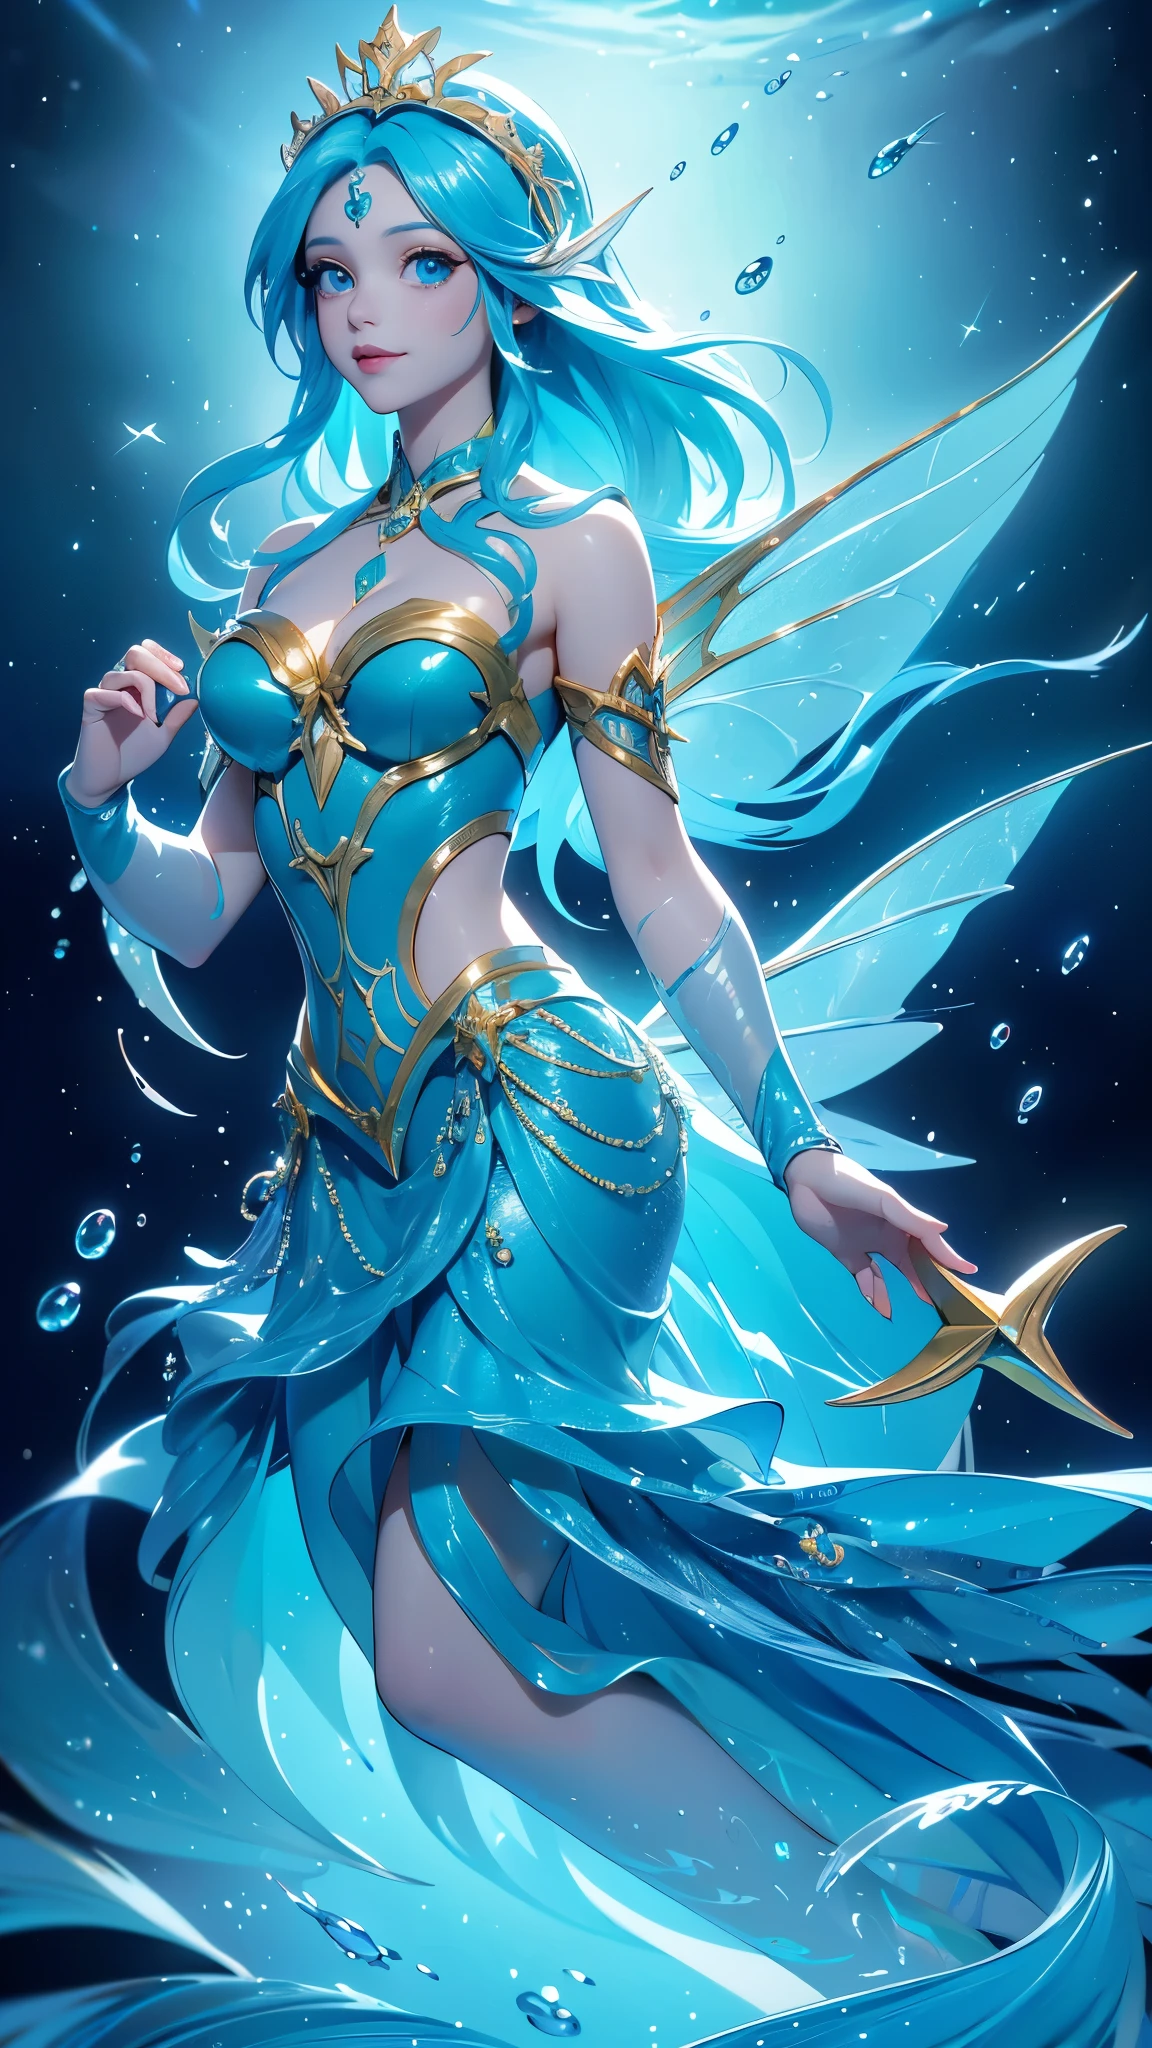 (คุณภาพดีที่สุด,มีความละเอียดสูง,ละเอียดมาก,แท้จริง), Ariel a cartoon ไซเรน with blue hair and a gold crown is swimming in the ocean, อะนิเมะศิลปะสาดน้ำ , เทพีแห่งท้องทะเล,( เทพธิดาแห่งมหาสมุทร) , มาริน คิตะกาวะ แฟนอาร์ต, ศิลปะอย่างเป็นทางการ, วอลล์เปเปอร์อะนิเมะน้ำสีฟ้า, ไซเรน, high detailed ศิลปะอย่างเป็นทางการwork, ภาพประกอบอะนิเมะแฟนตาซี, ศิลปะอย่างเป็นทางการwork, งานศิลปะที่มีรายละเอียดคุณภาพสูง 8K, (beautiful ไซเรน ariel:1.4) , ศิลปะอะนิเมะดิจิตอลโดยละเอียด, (ใต้ท้องทะเลในน้ำ:1.4),,( กายวิภาคศาสตร์ที่สมบูรณ์แบบ) 